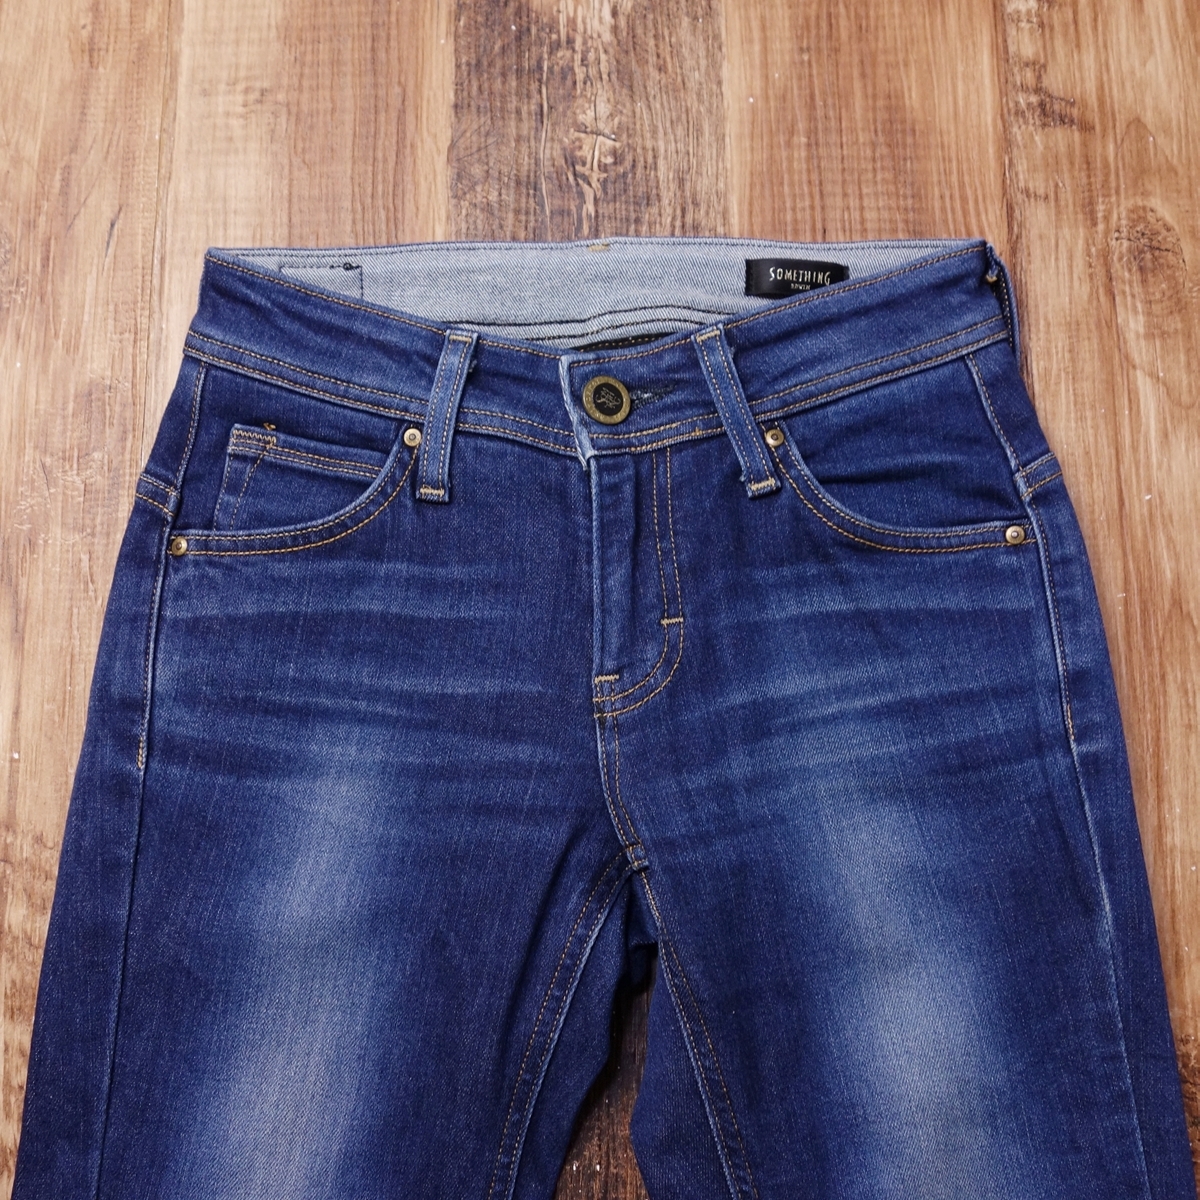 26 дюймовый стрейч джинсы Something женский SOMETHING б/у одежда Denim брюки SW266 индиго голубой MO18